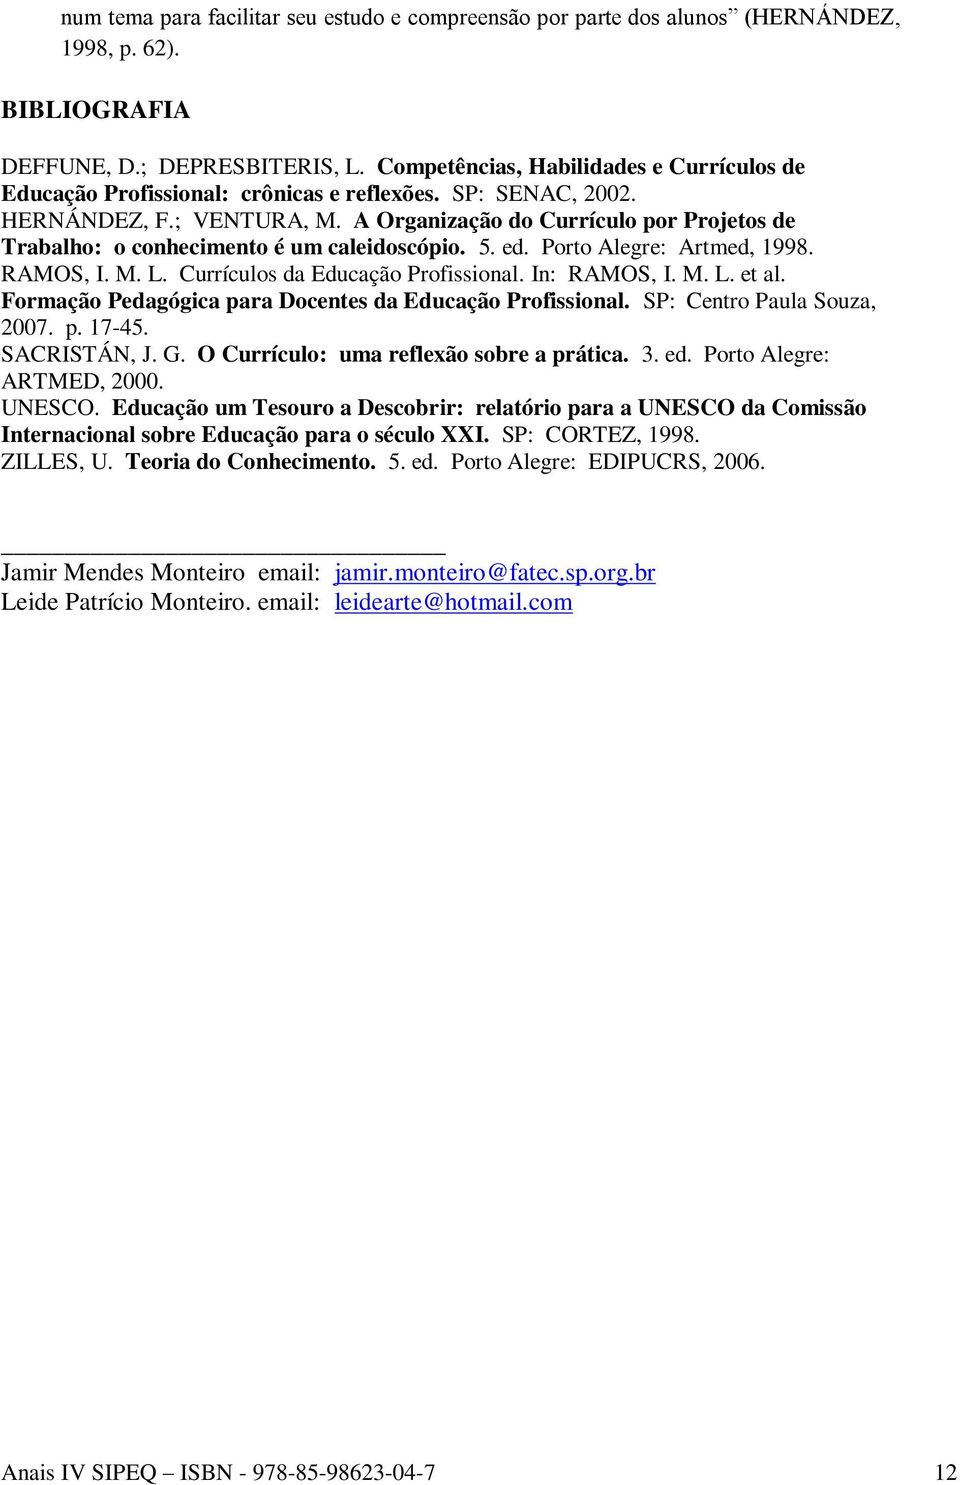 A Organização do Currículo por Projetos de Trabalho: o conhecimento é um caleidoscópio. 5. ed. Porto Alegre: Artmed, 1998. RAMOS, I. M. L. Currículos da Educação Profissional. In: RAMOS, I. M. L. et al.